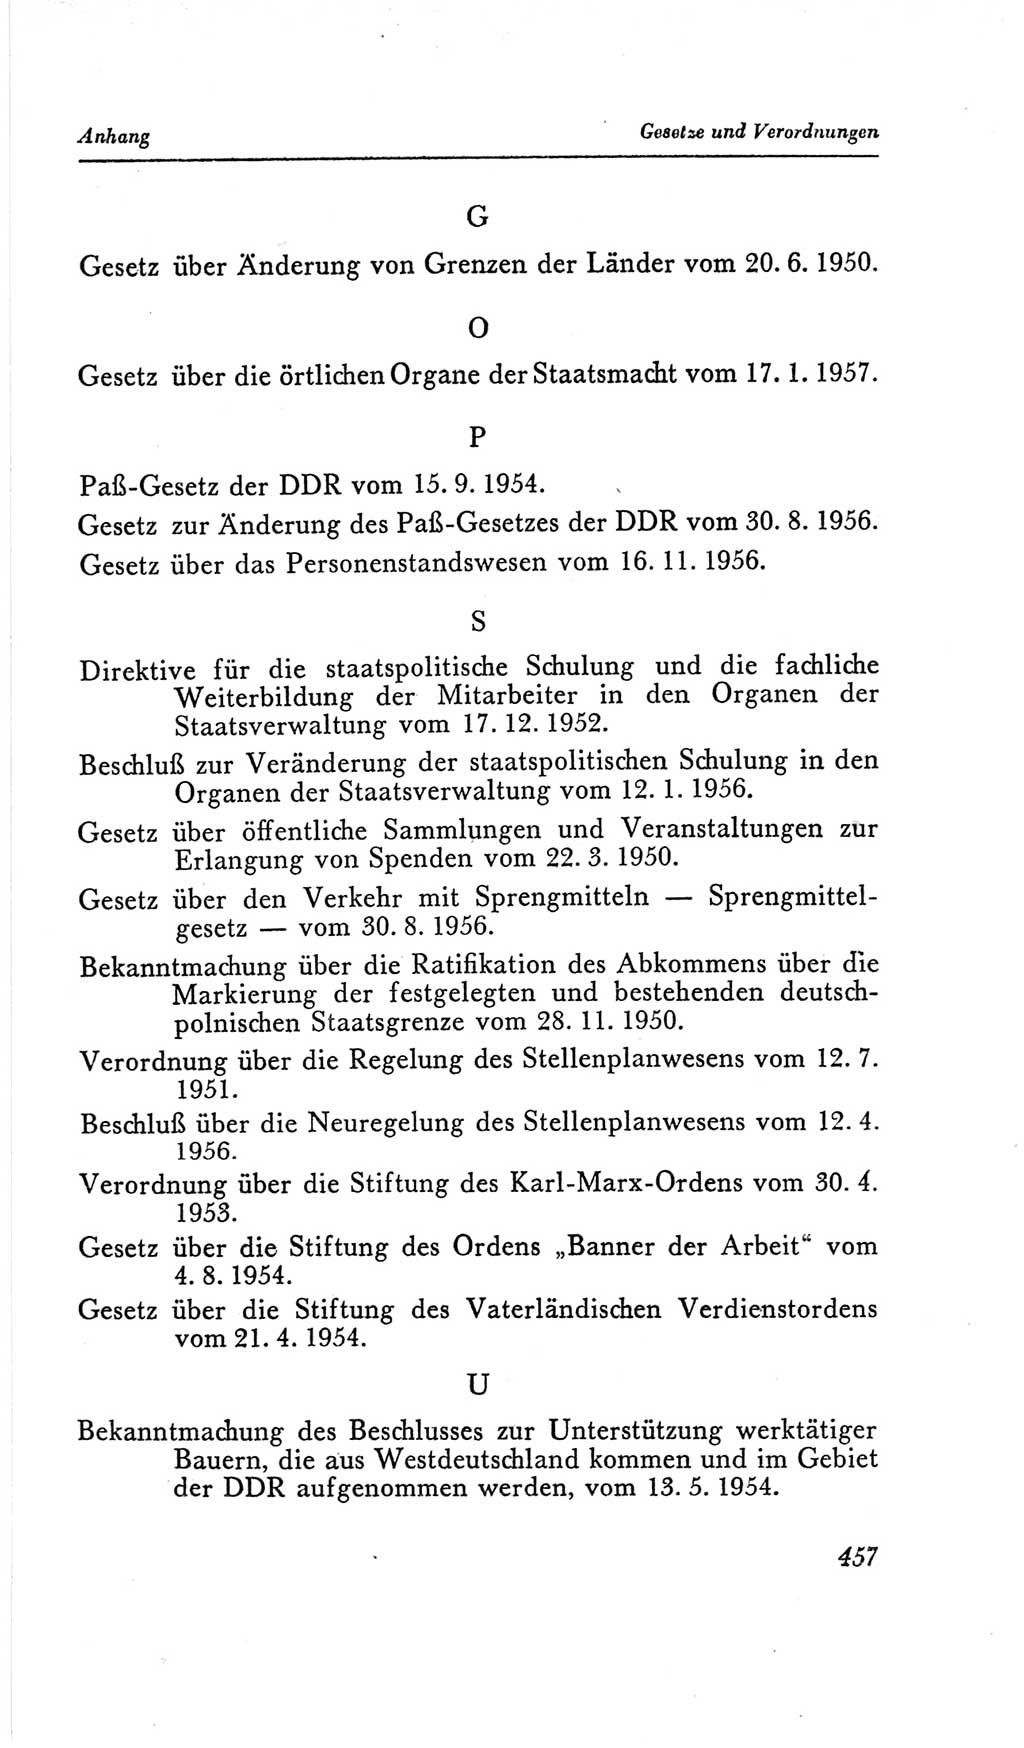 Handbuch der Volkskammer (VK) der Deutschen Demokratischen Republik (DDR), 2. Wahlperiode 1954-1958, Seite 457 (Hdb. VK. DDR, 2. WP. 1954-1958, S. 457)